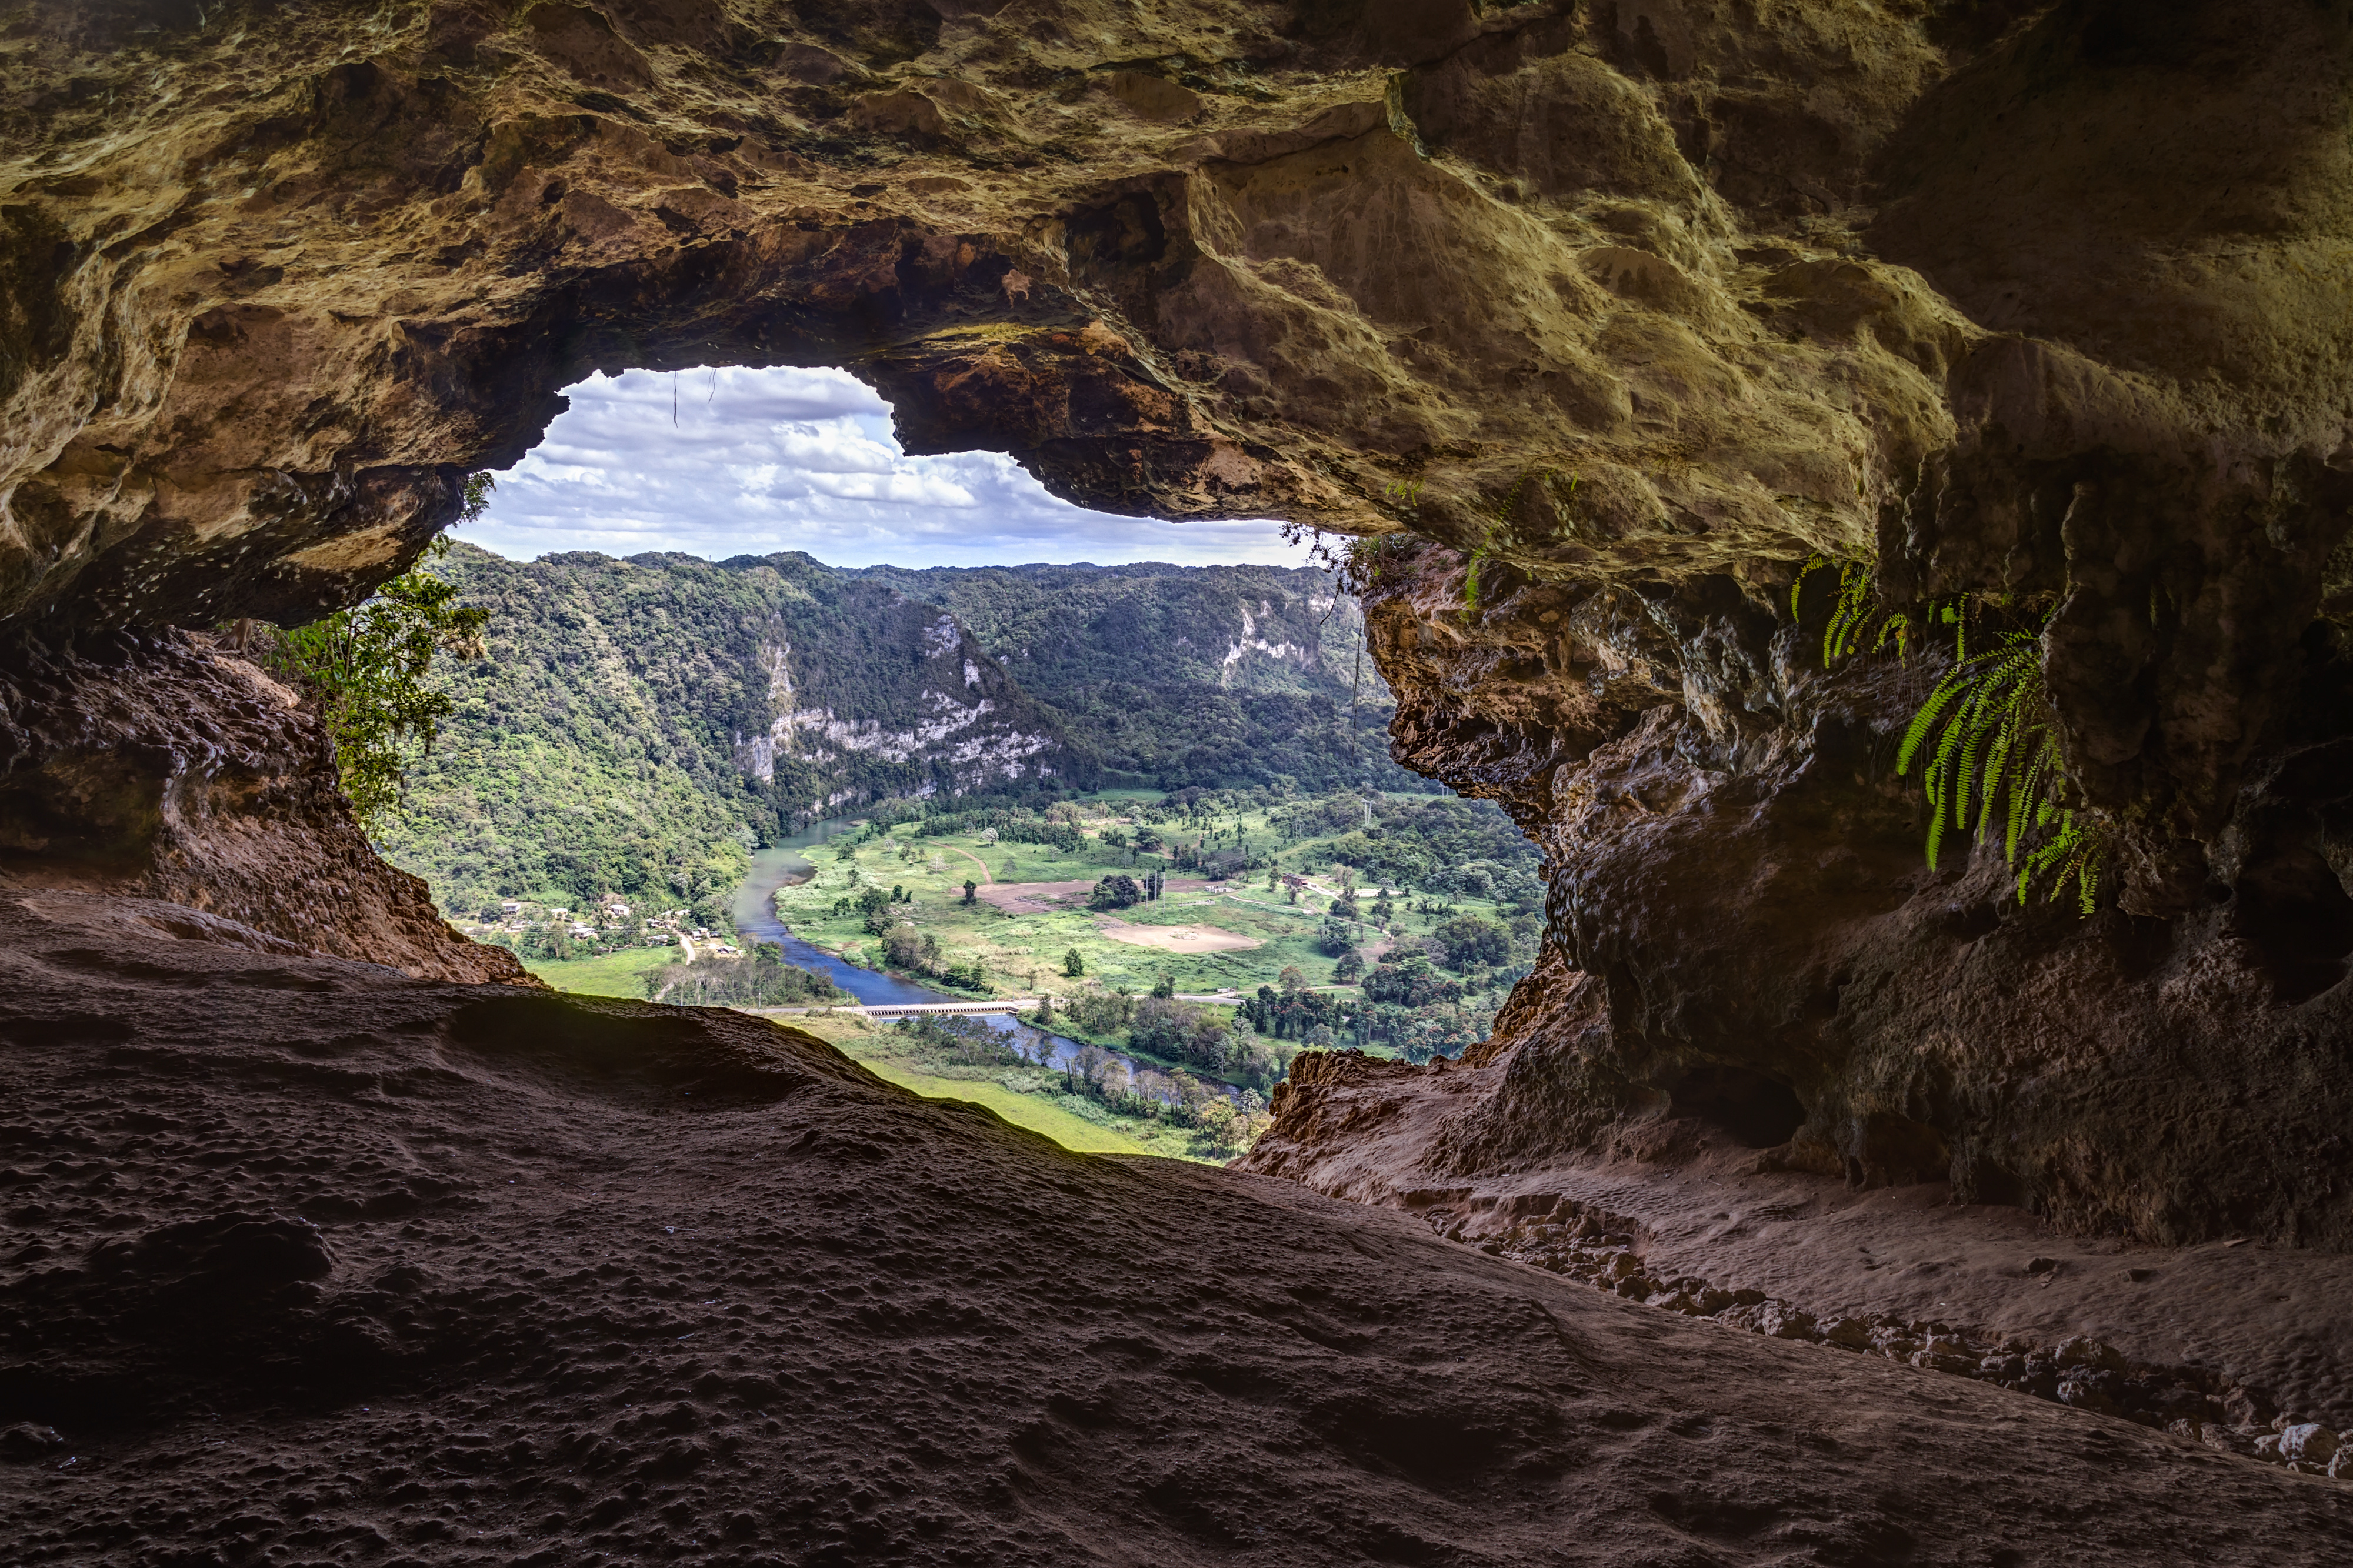 Cueva Ventana in Puerto Rico